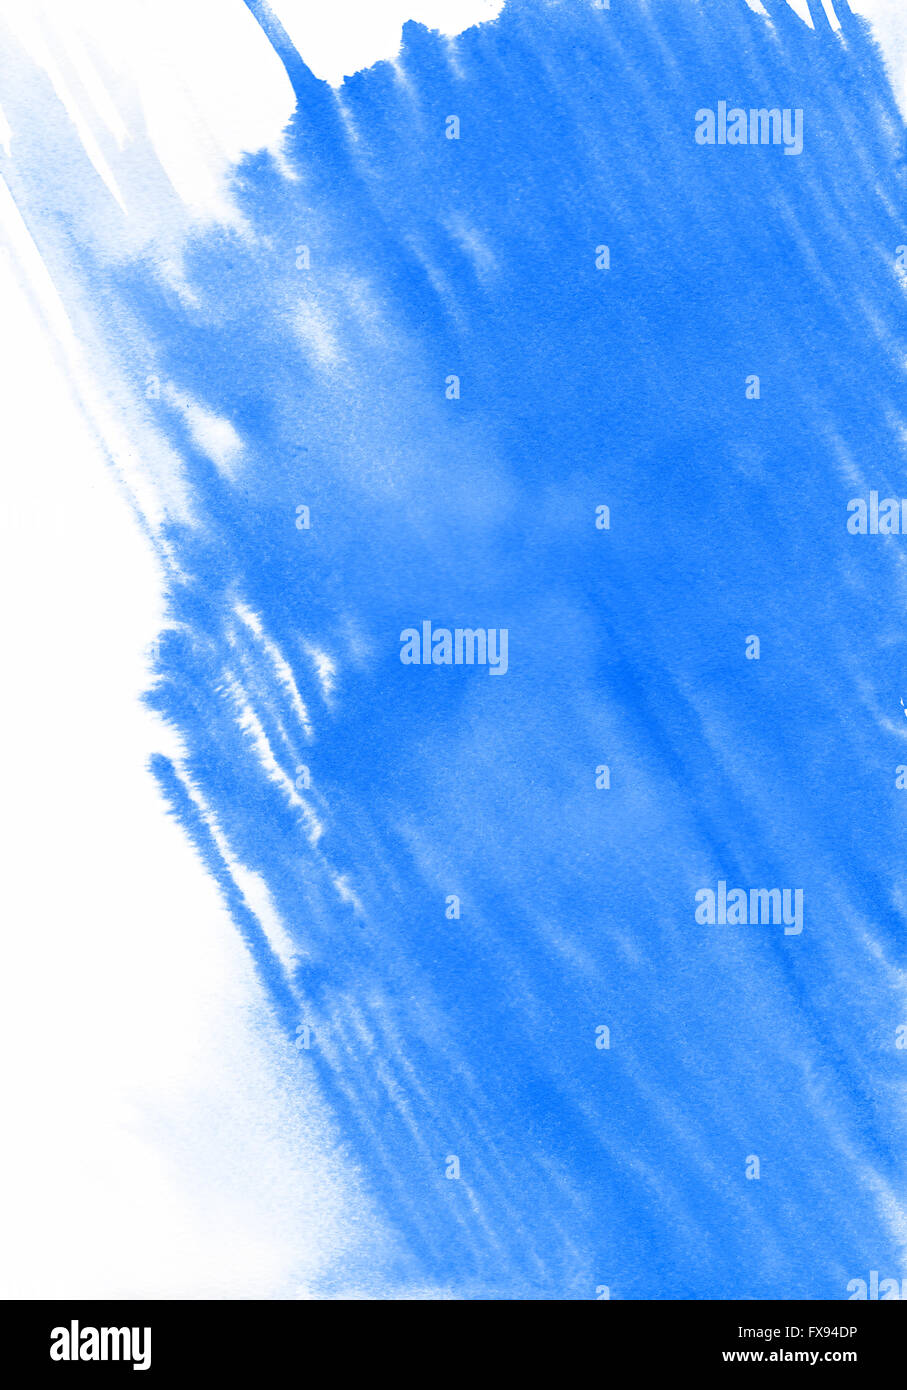 La texture de la peinture aquarelle bleu isolé sur fond blanc Banque D'Images